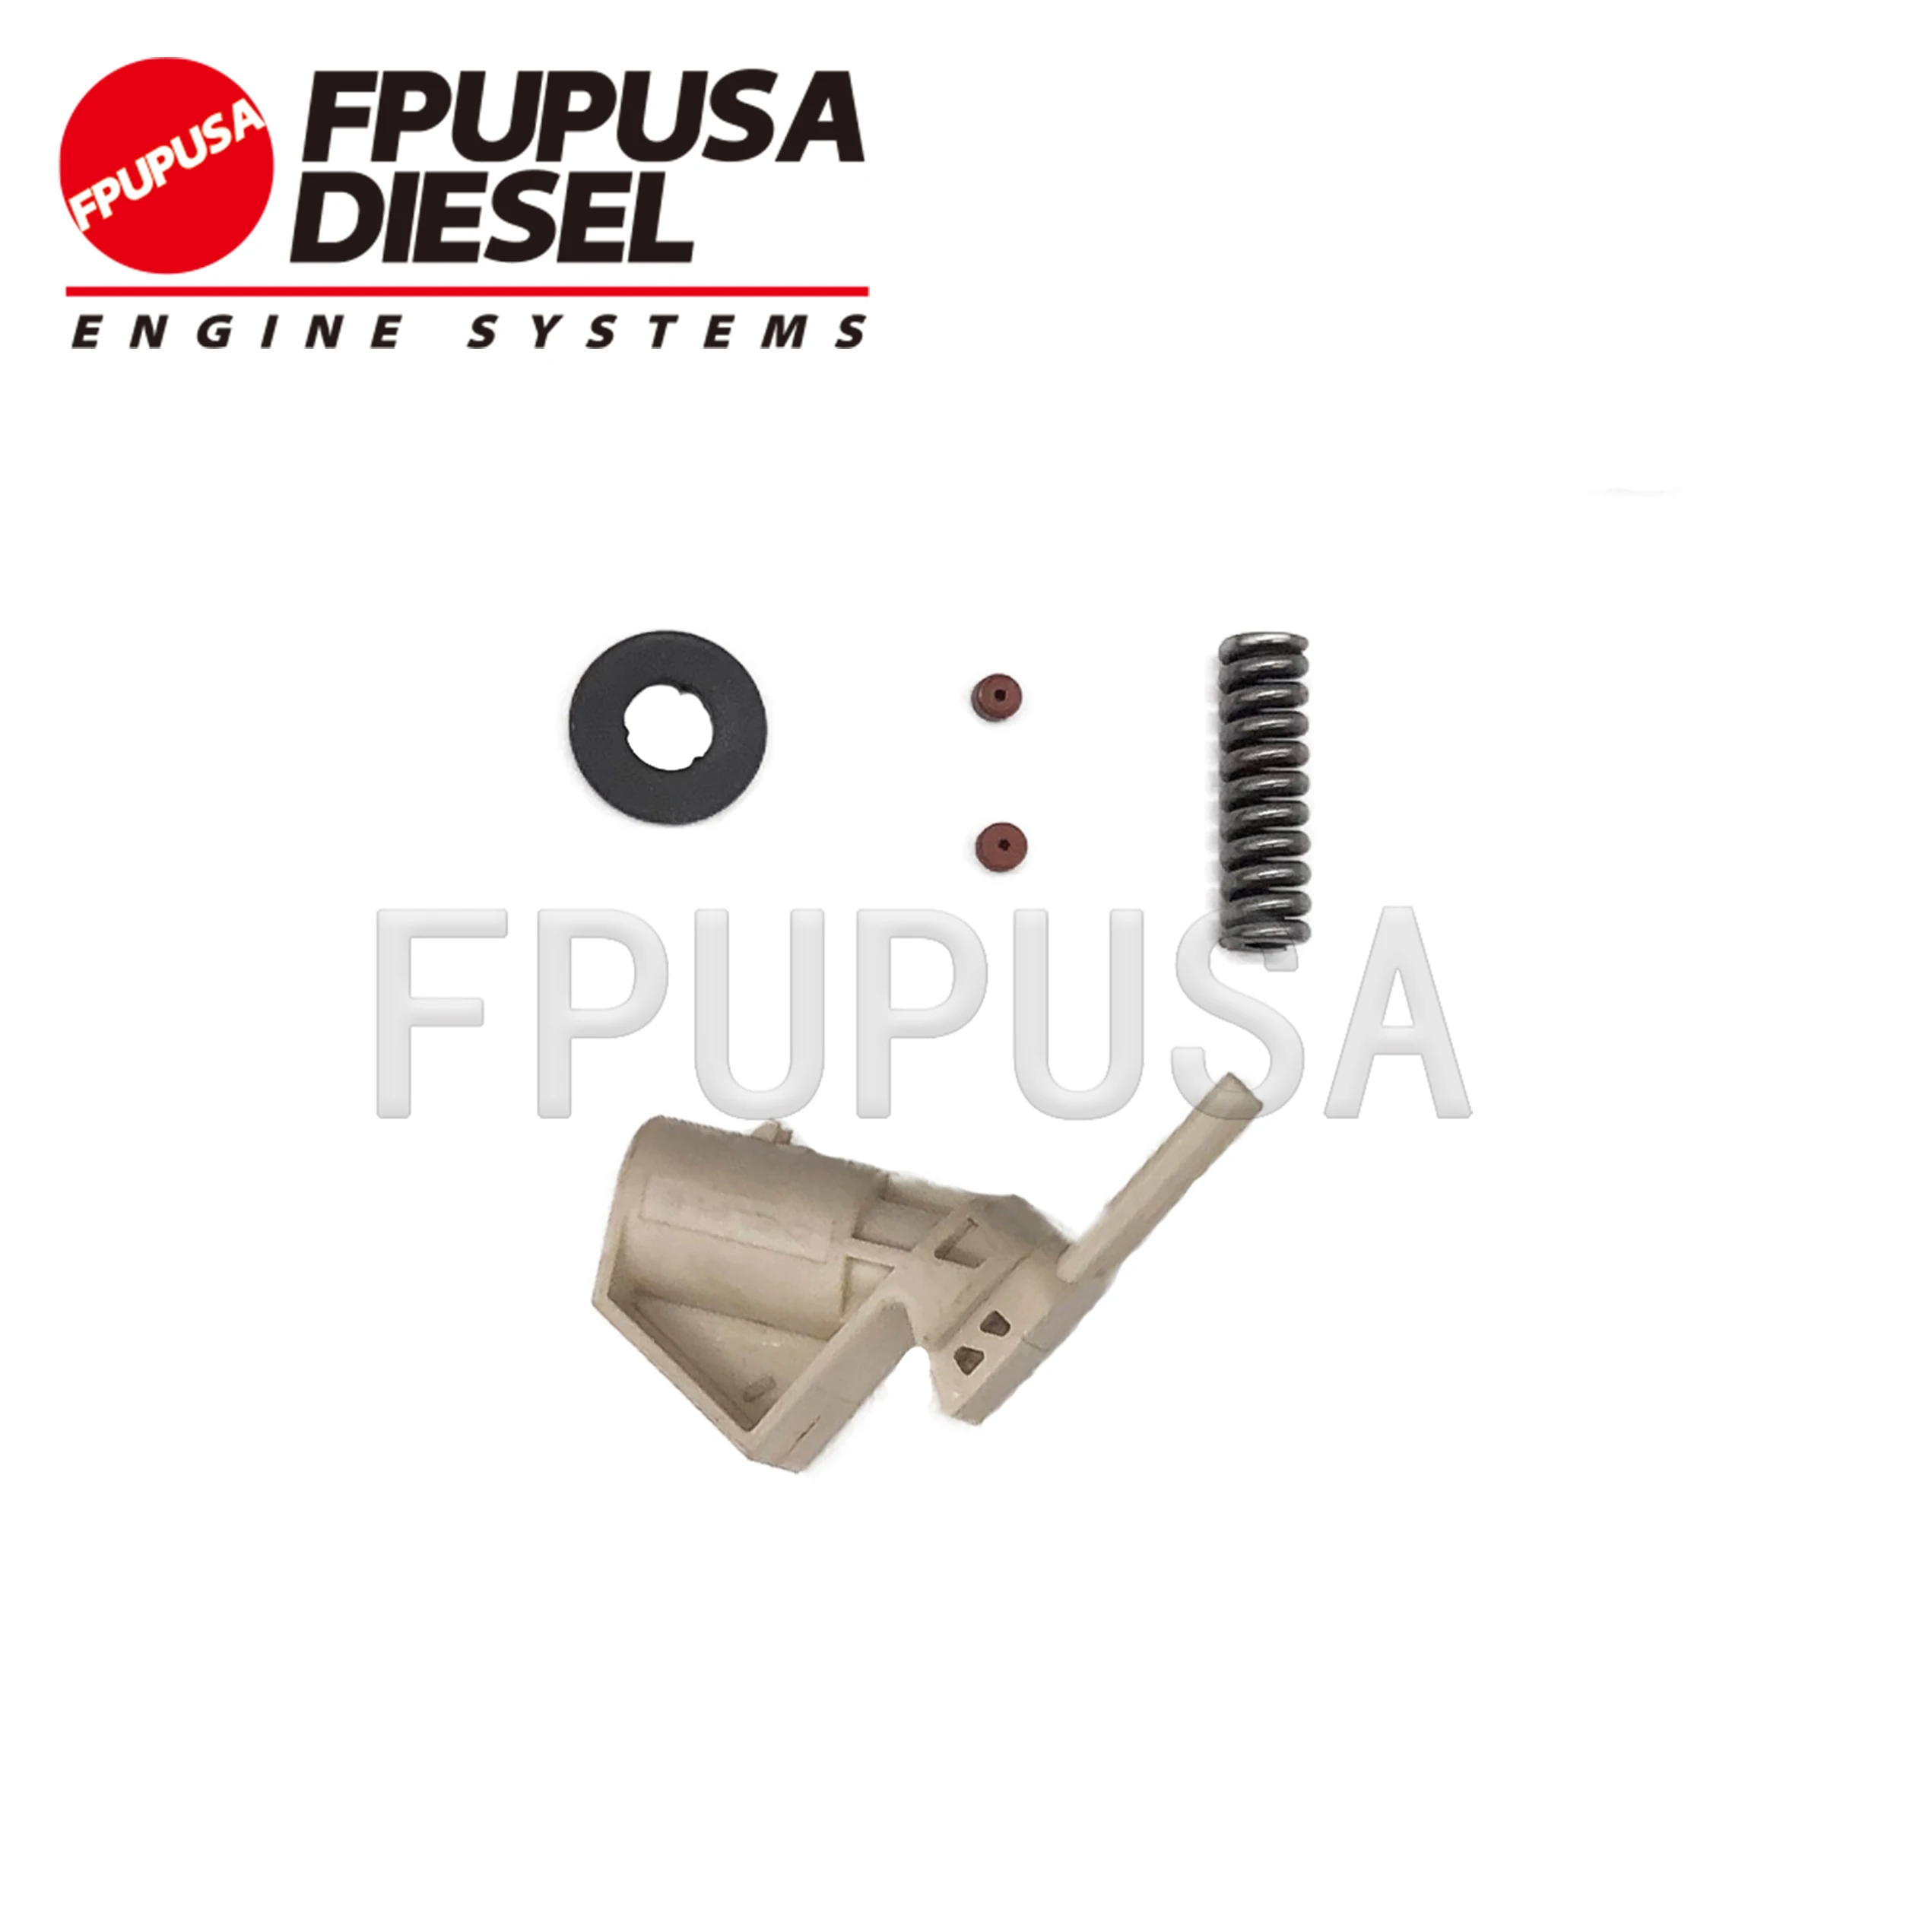 FPUPUSA Inyector de Combustible Kits de Reparación para E1 Inyector 20430583 20440388 20500620 21586294 21586284